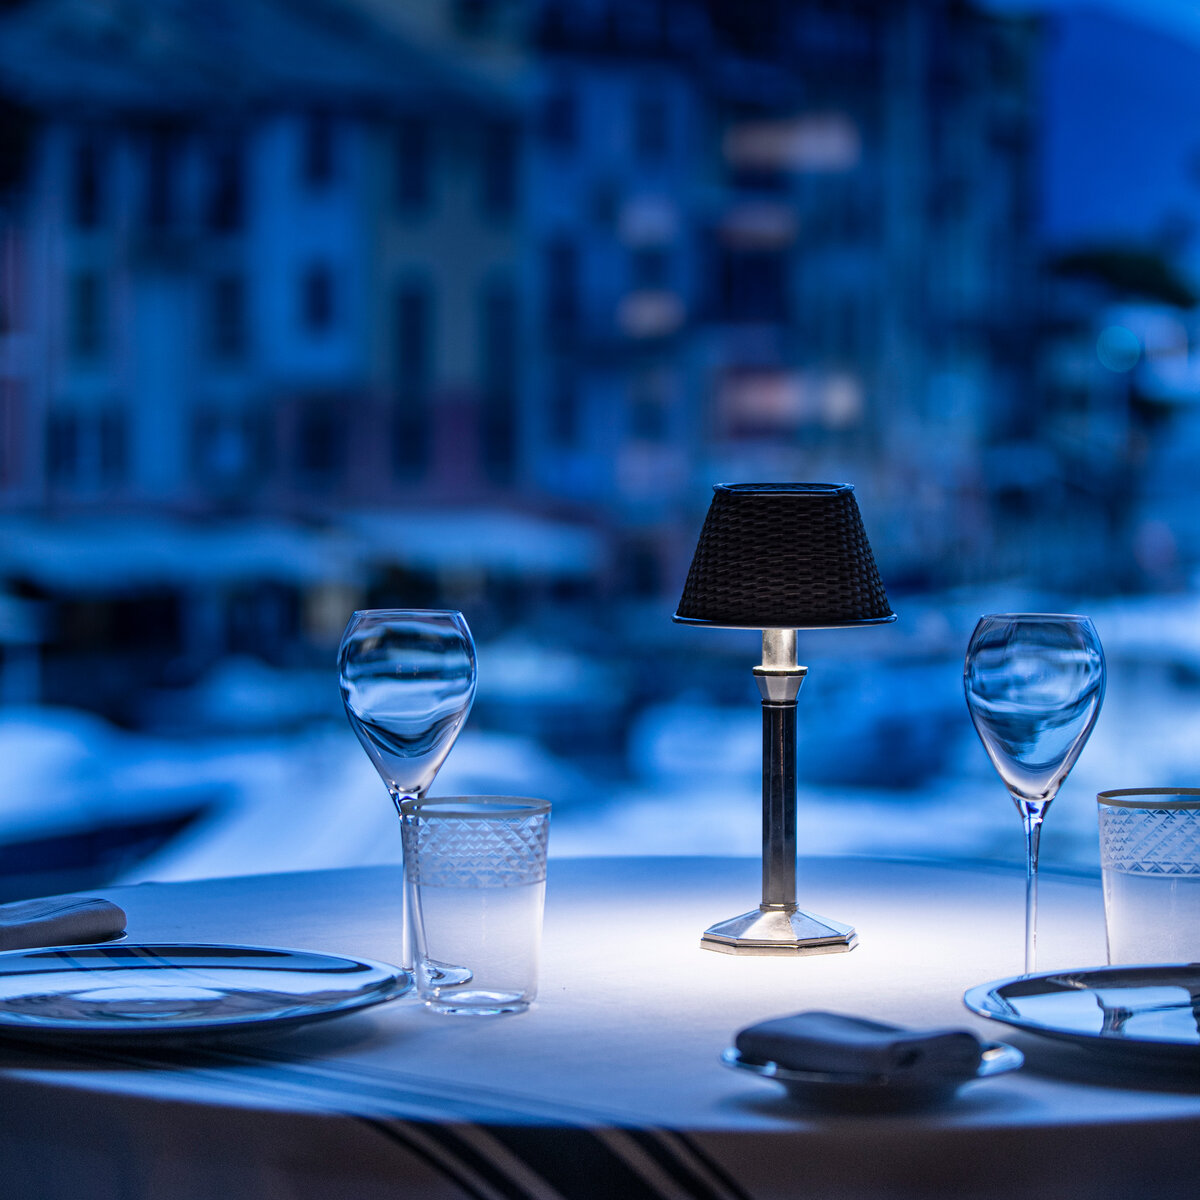 Cracco Portofino-Restaurant | © Davide Groppi srl | All Rights Reserved